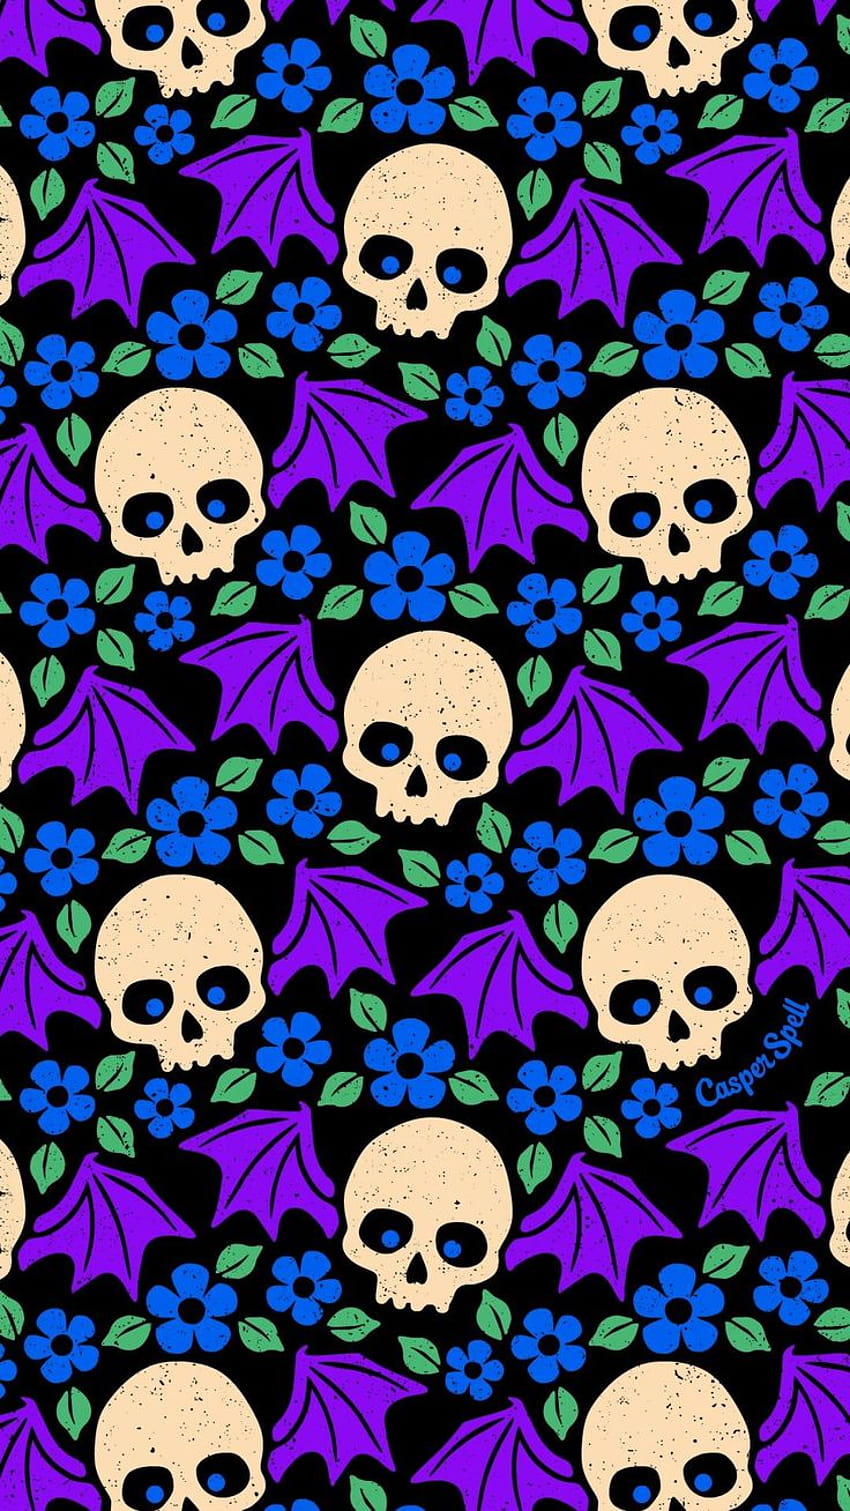 Alas palo de los cráneos, purple halloween phone HD phone wallpaper